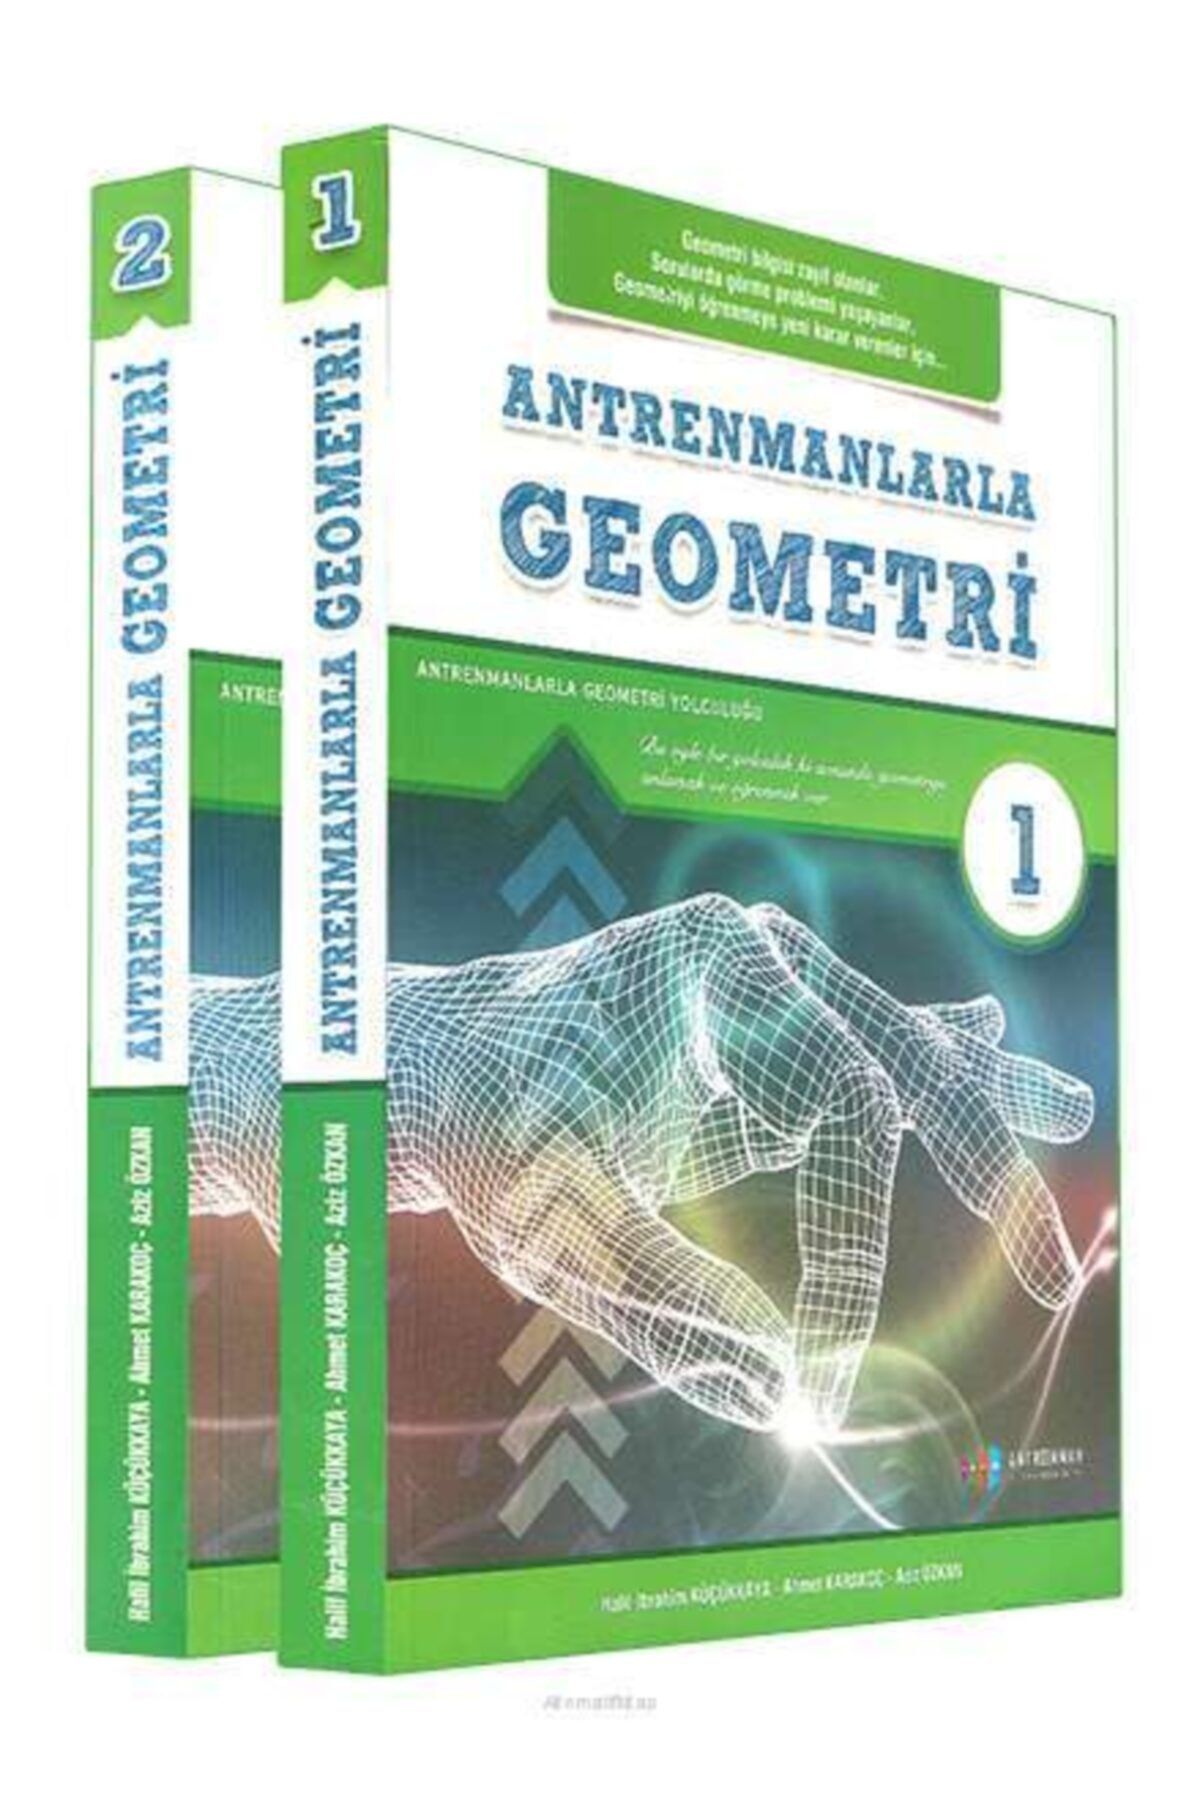 Antrenman Yayıncılık Antrenmanlarla Geometri (1-2) Kitap Seti